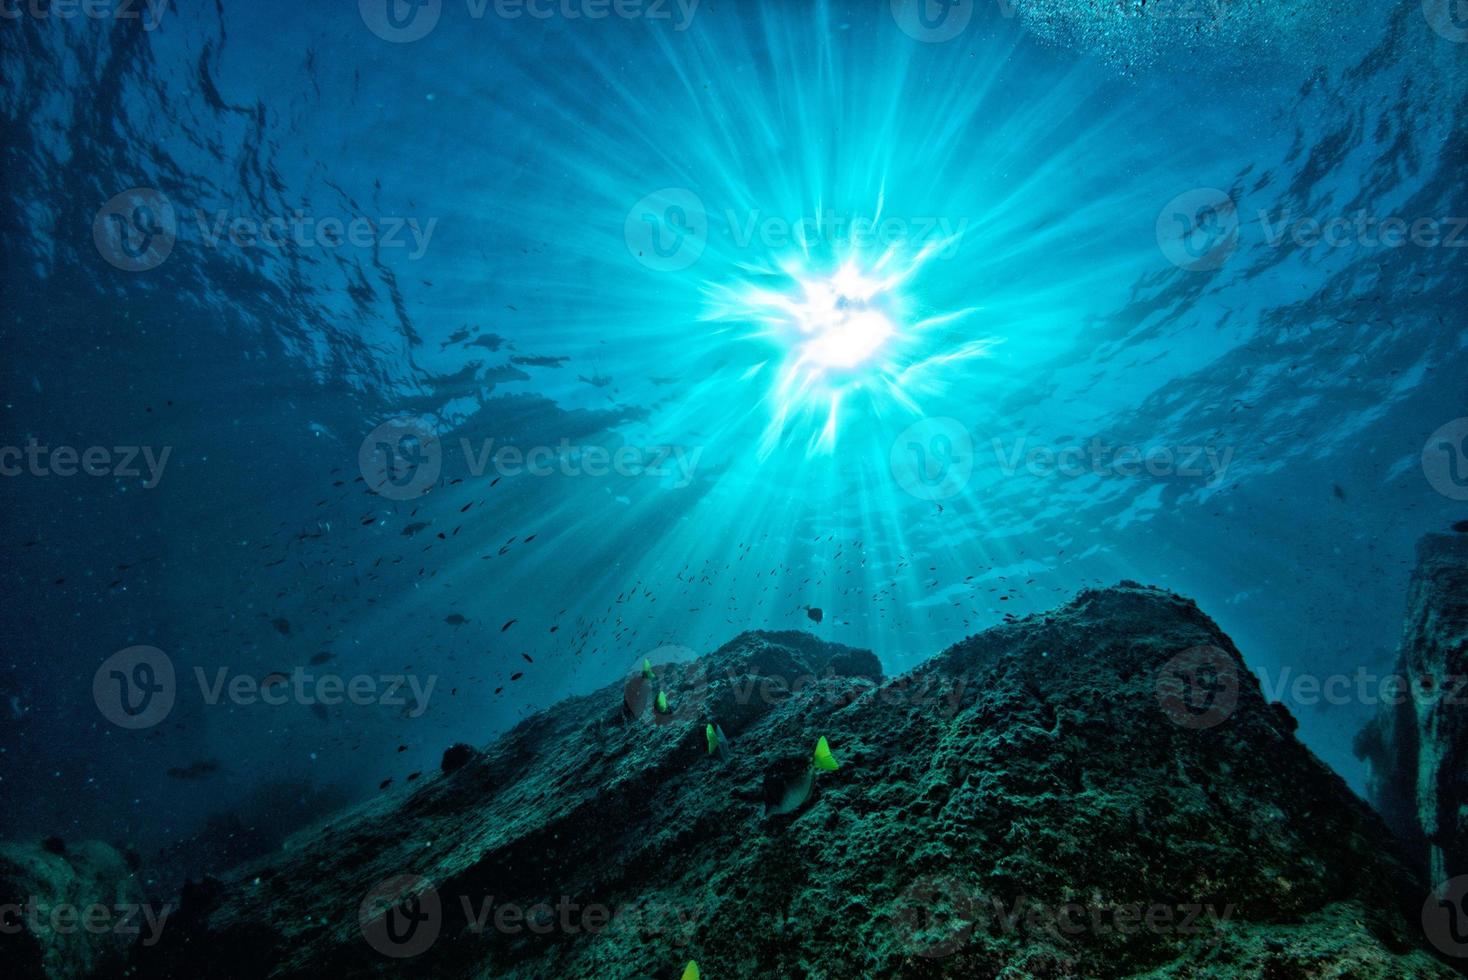 mergulho no recife colorido debaixo d'água no mar de cortez do méxico foto